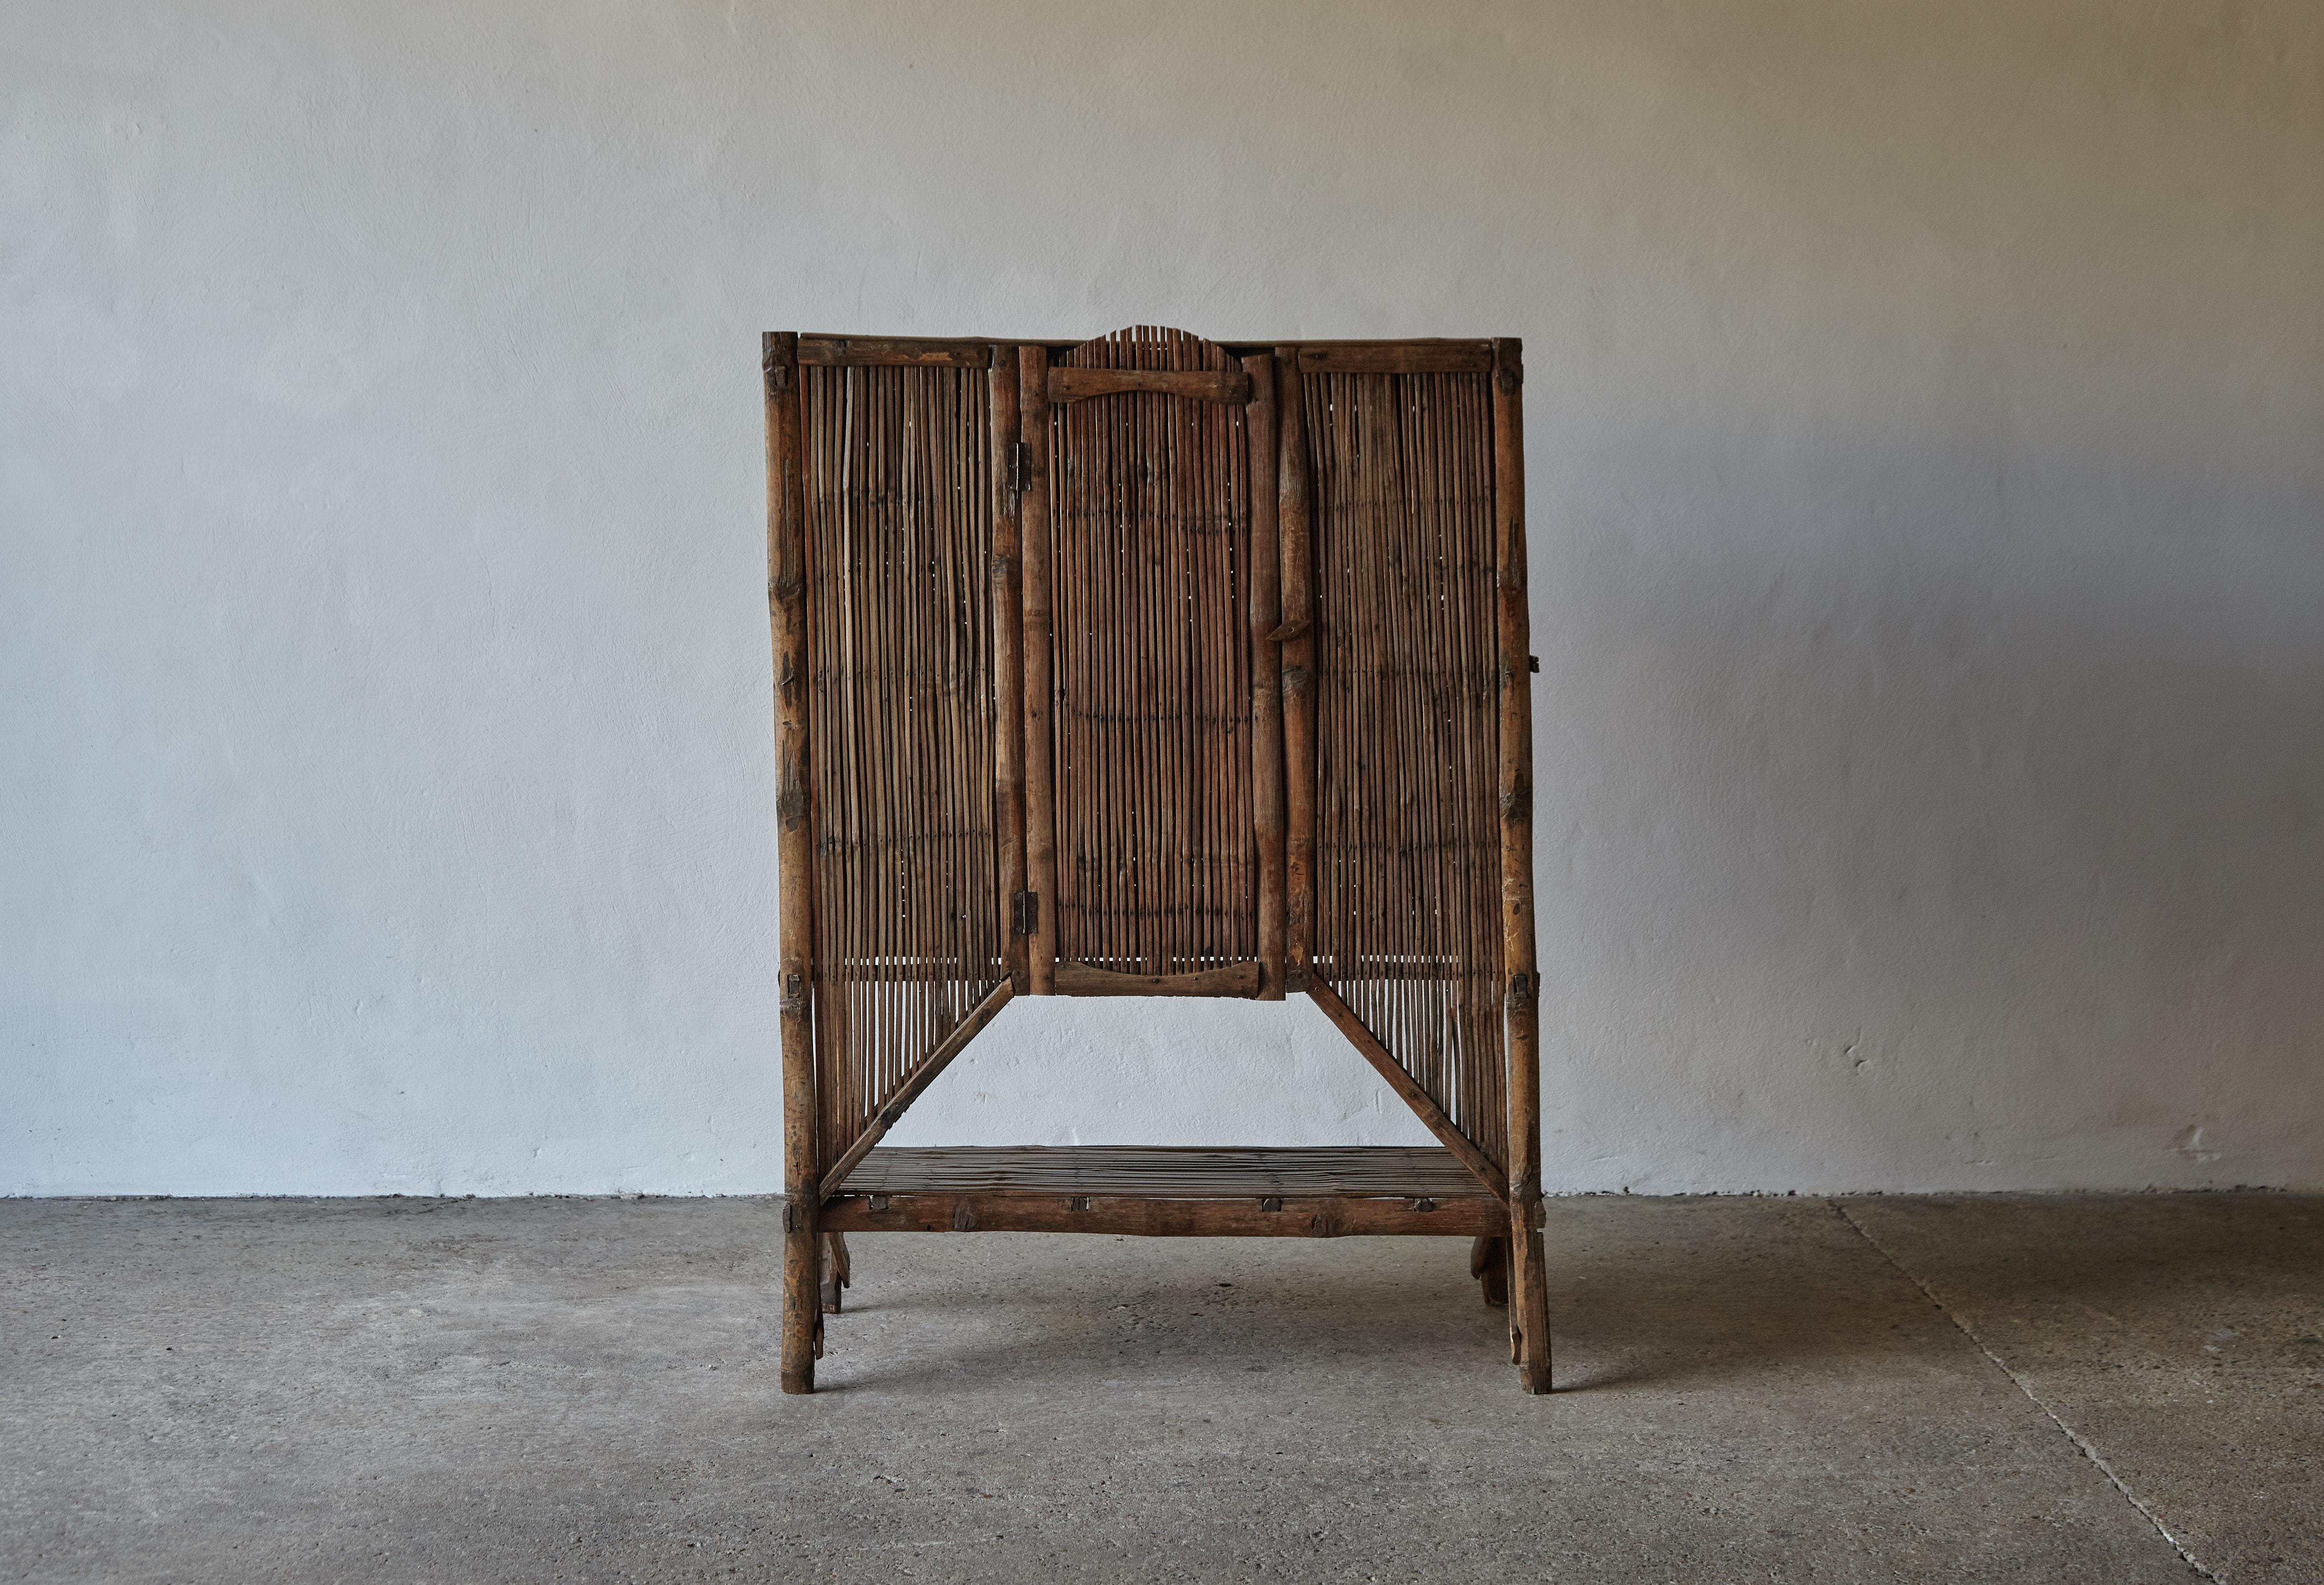 Un meuble en bambou inhabituel et saisissant, en état d'origine, avec une belle tonalité et une belle patine. De construction assez délicate, il ne convient probablement pas à un usage intensif. Usure conforme à l'âge et à l'utilisation.


